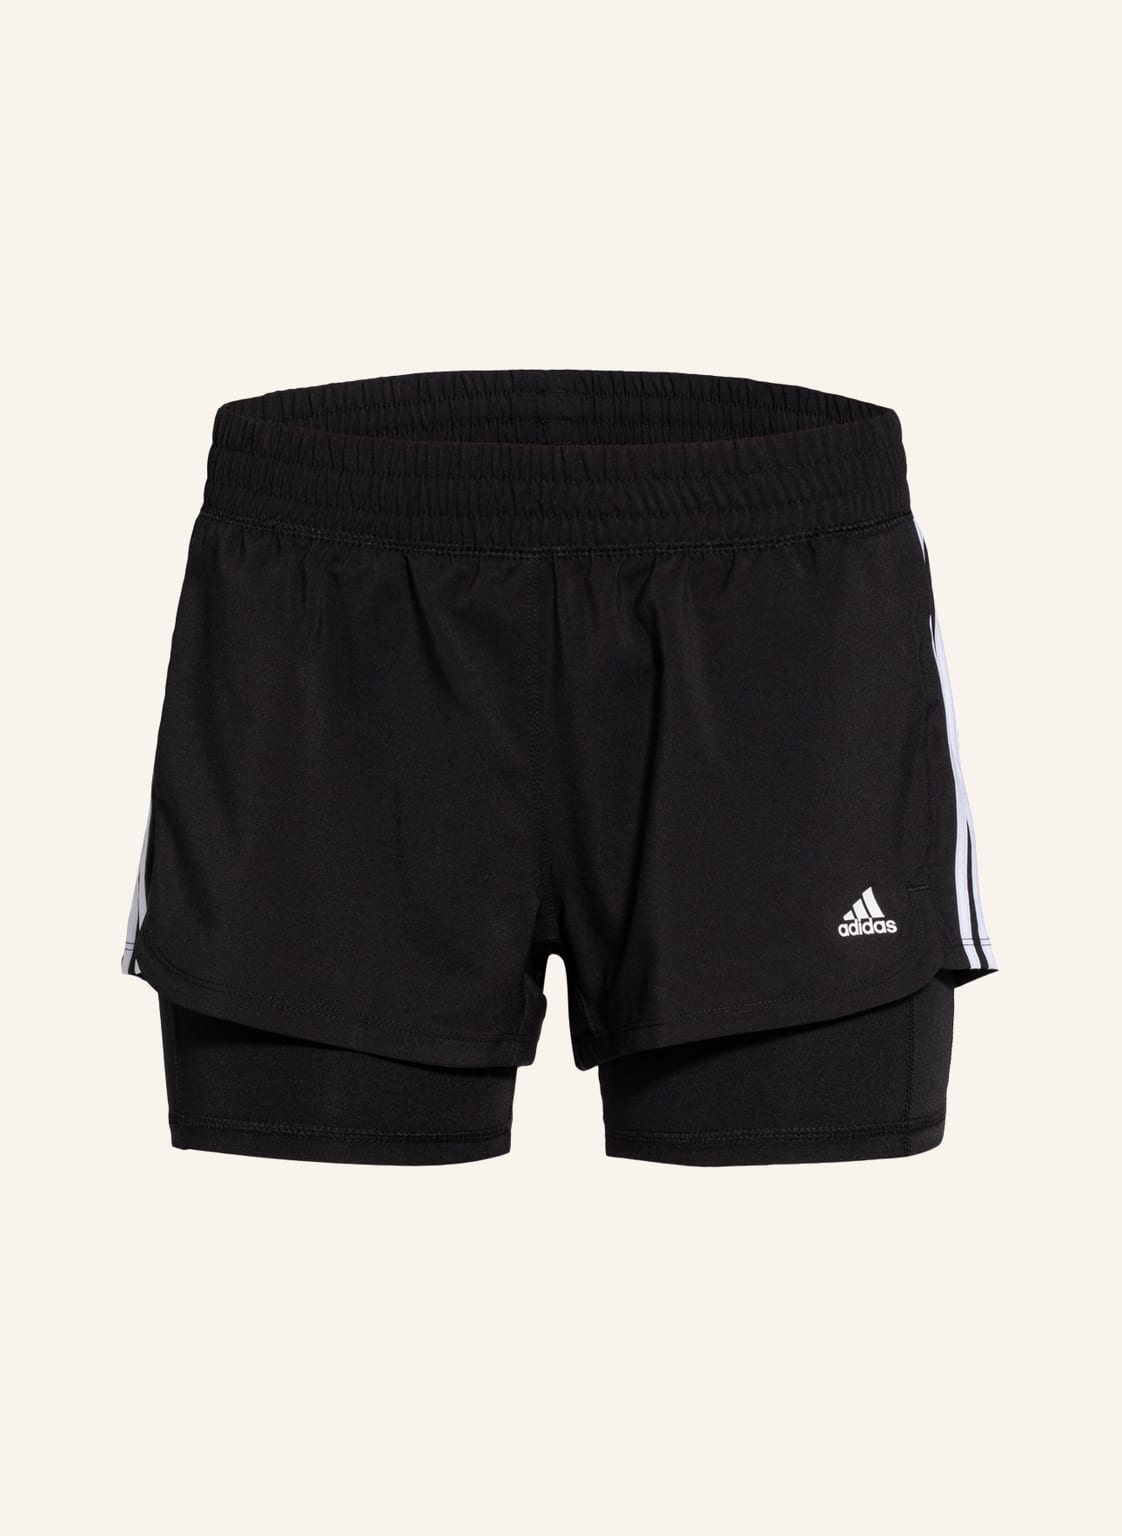 Adidas 2-In-1-Shorts Pacer schwarz von Adidas